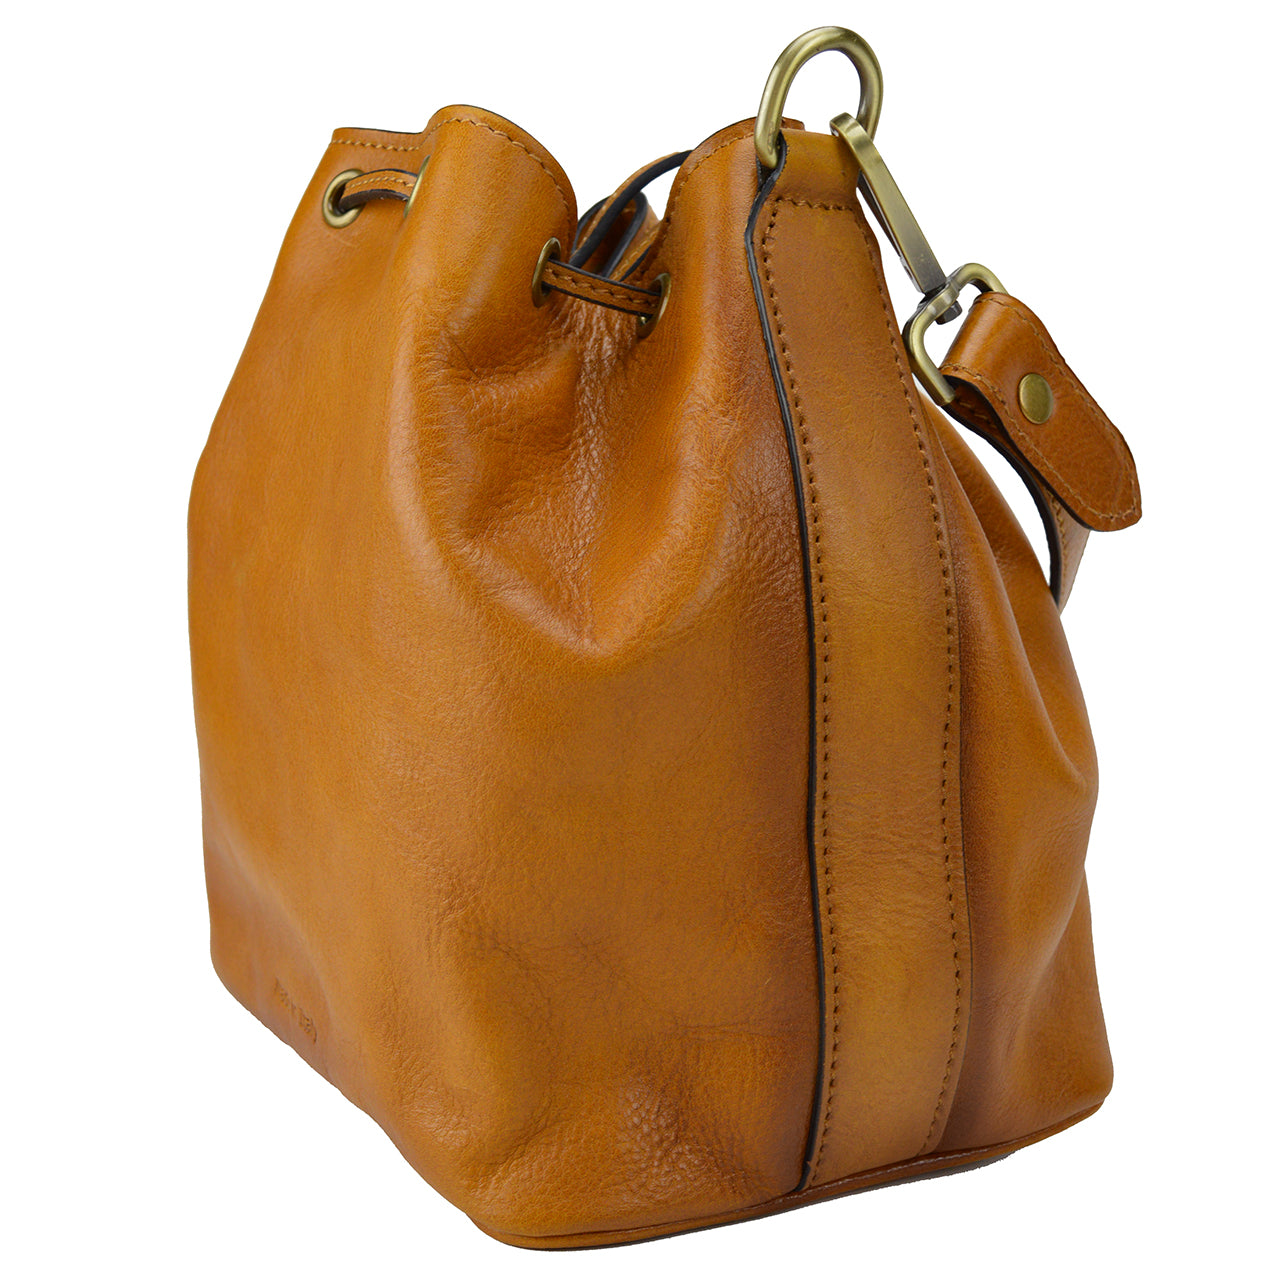 Pratesi Sorano Woman Bag in genuine Italian leather